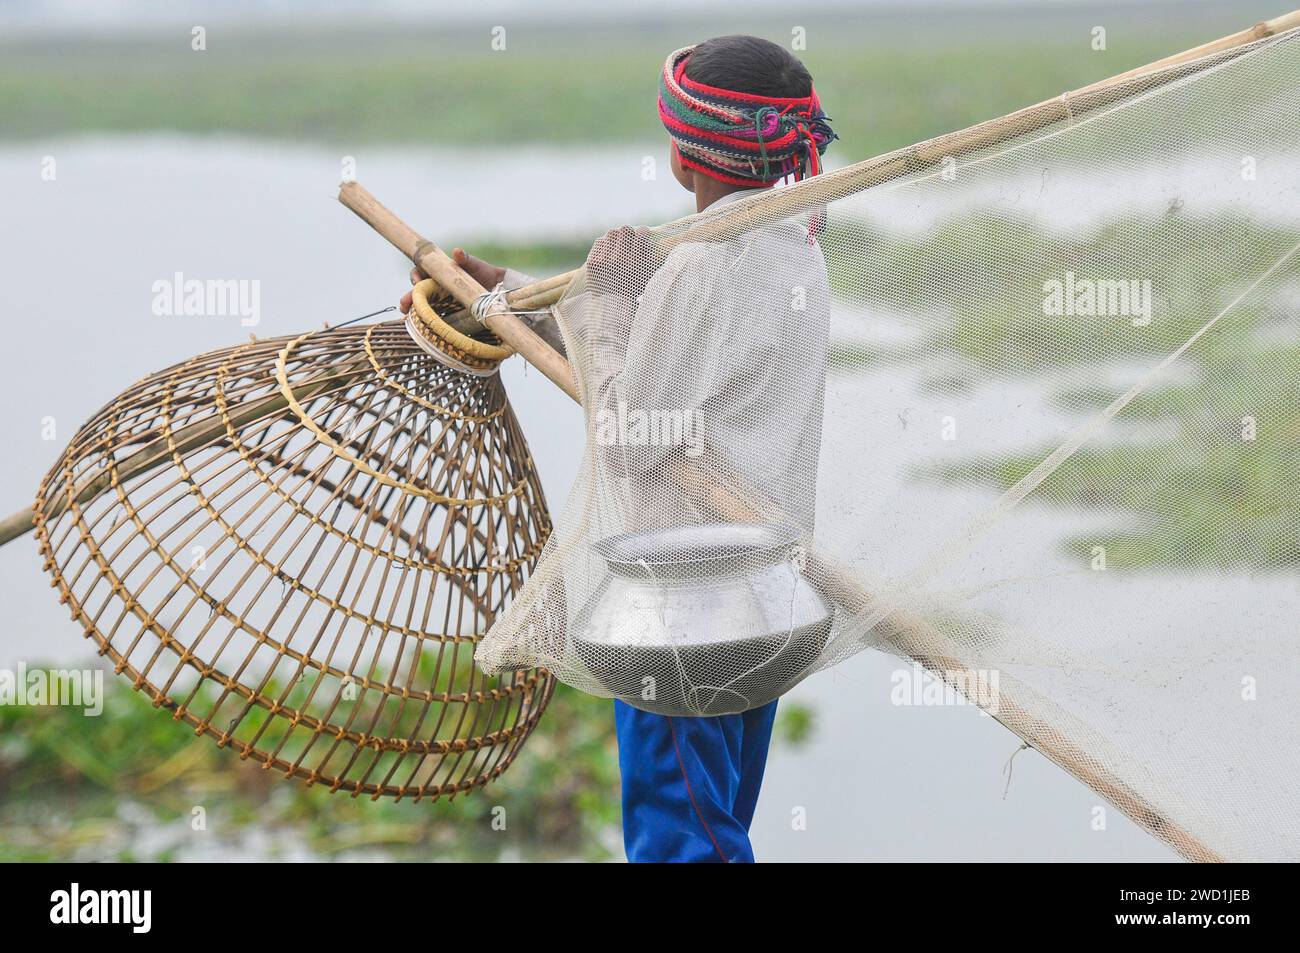 Le popolazioni rurali armate di trappole per pesci di bambù e reti da pesca artigianali prendono parte a una festa invernale di pesca bawa, che dura 100 anni, presso il Gowahori beel of Biswanath upazila a Sylhet. La gente del posto ha detto che il festival viene celebrato ogni anno nel primo giorno del mese di Bangla di Poush e, a parte la gente del posto, persone provenienti da diverse parti dell'Upozila si radunano al beel con diversi tipi di trappole da pesca per partecipare. Sylhet, Bangladesh. Foto Stock